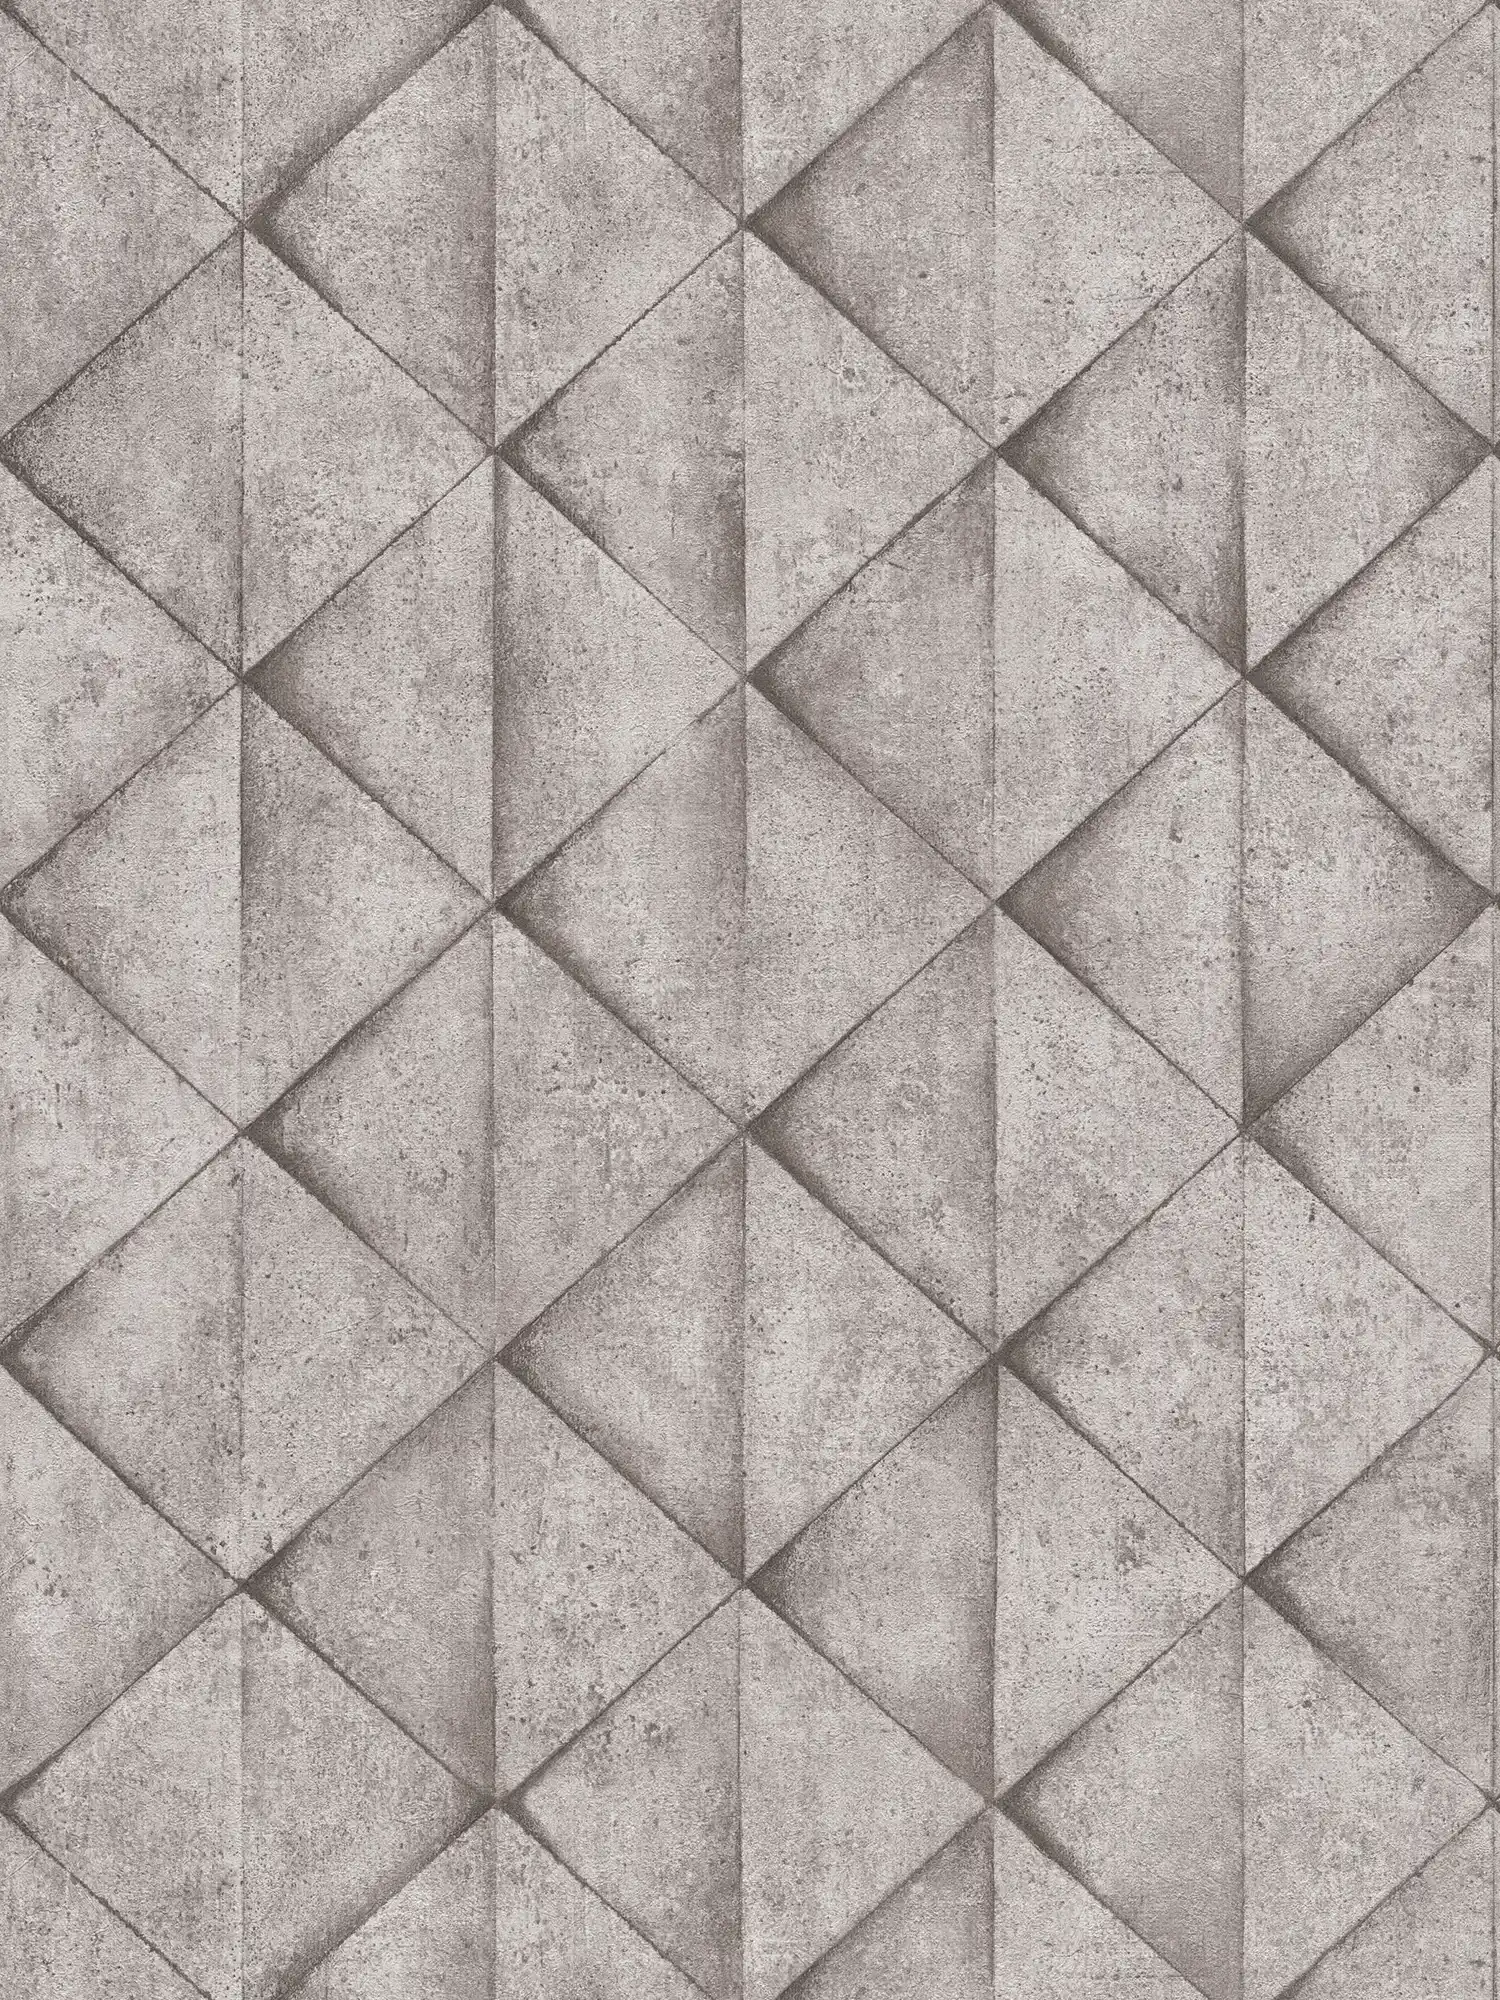 Carta da parati con piastrelle in cemento ed effetto 3D - grigio, antracite
